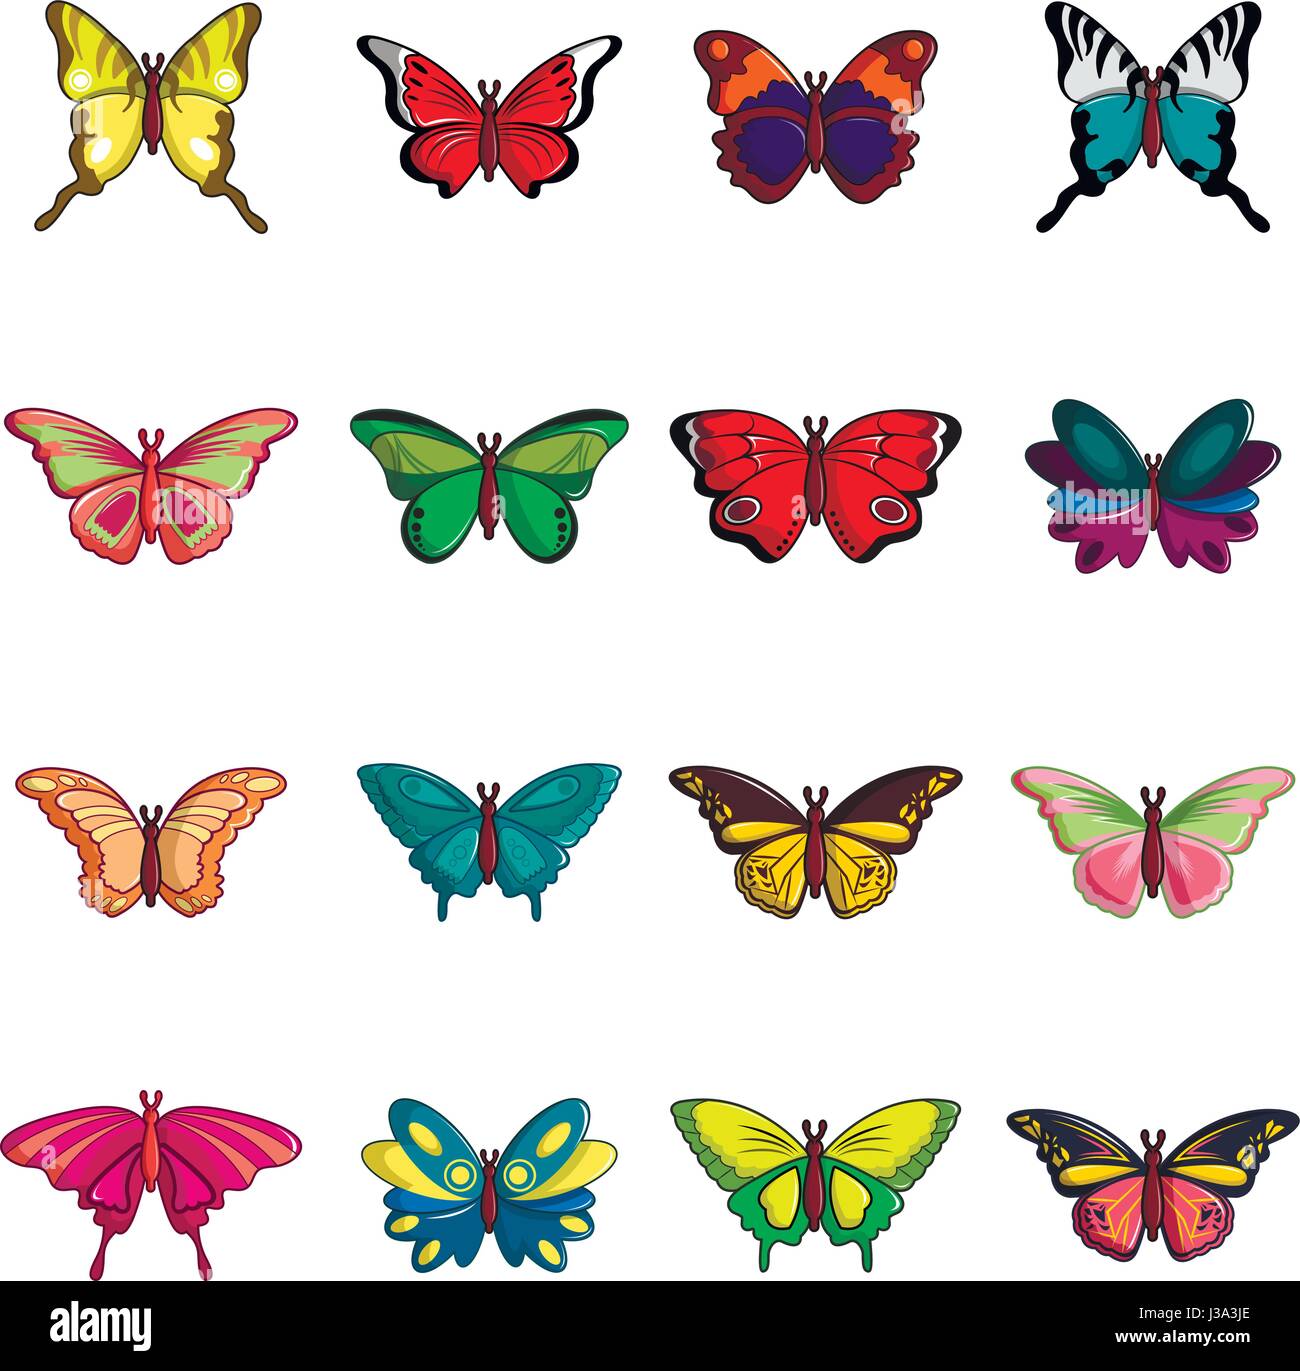 Colección De Mariposas Conjunto De Iconos De Estilo De Dibujos